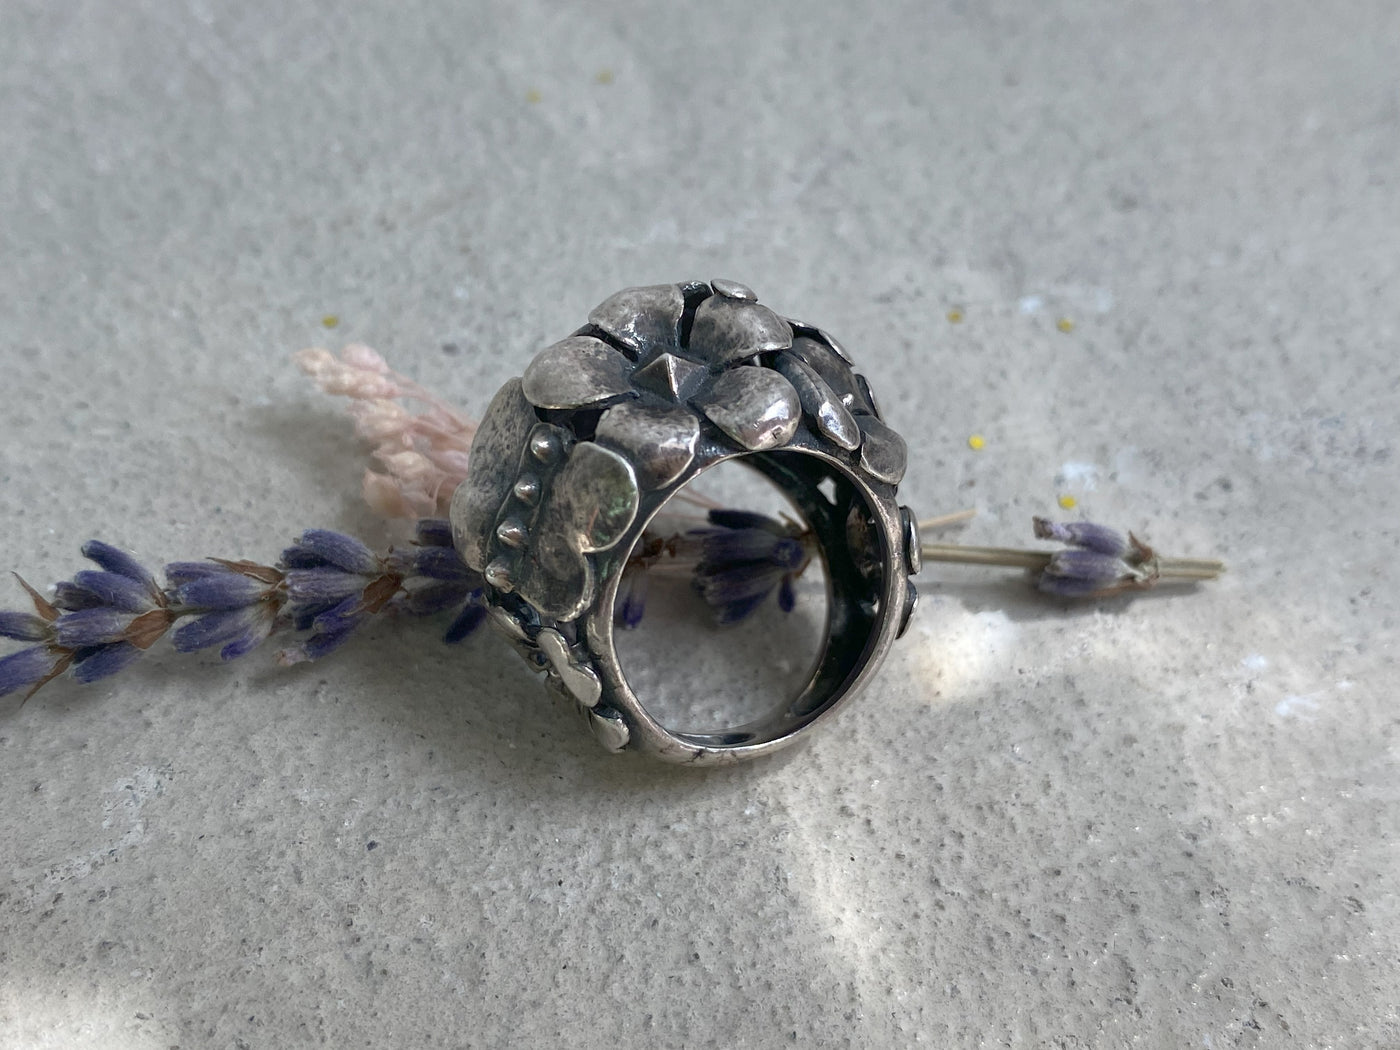 Vintage Flower Ring